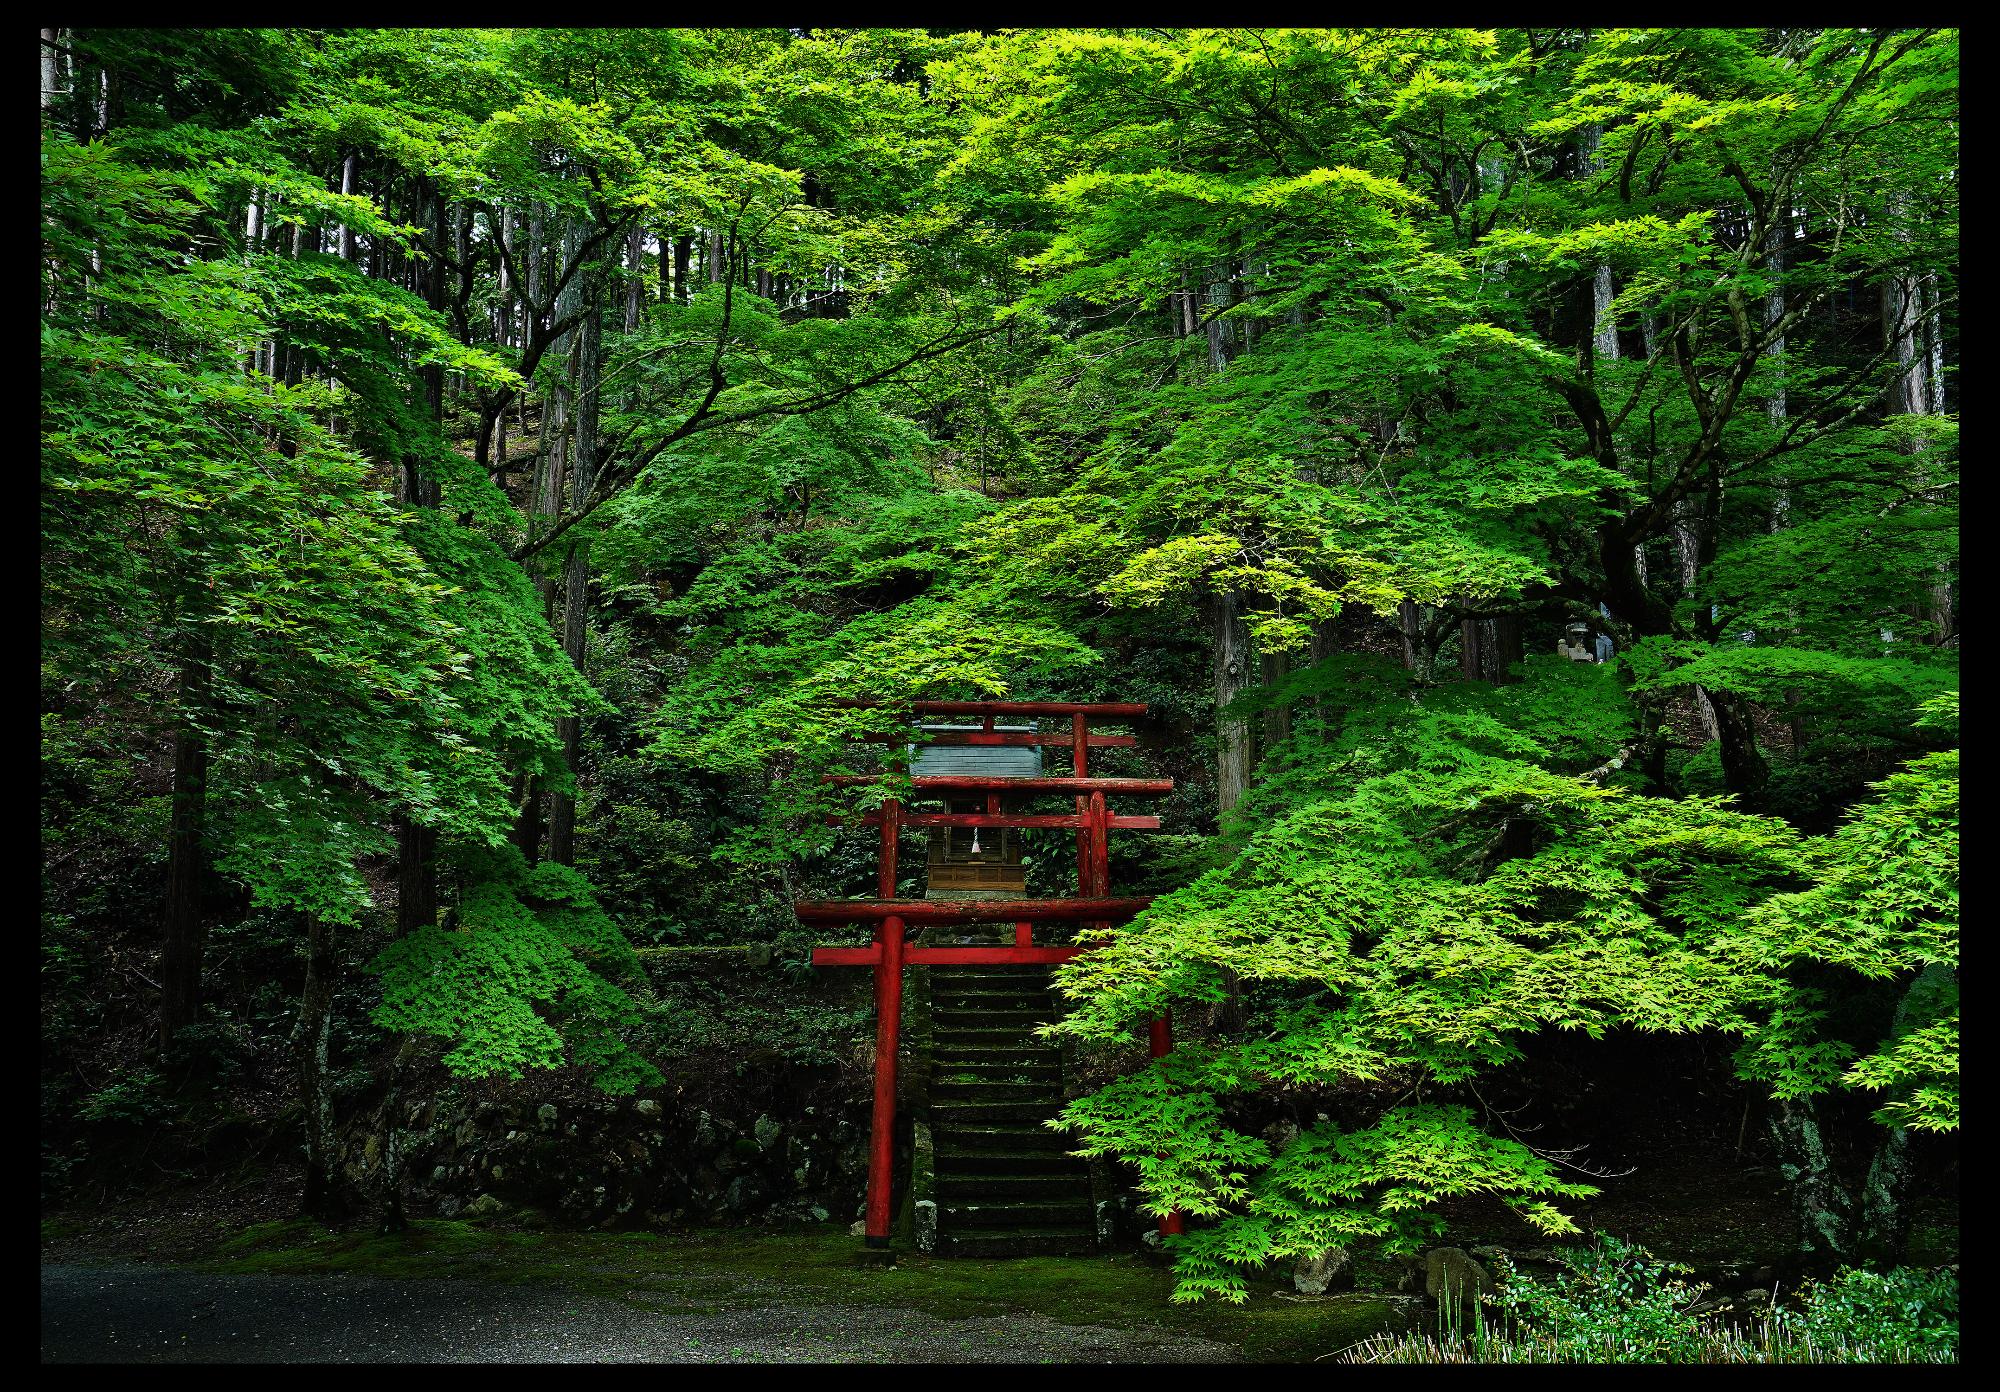 寺の鳥居を覆うように緑色の紅葉の葉が生い茂っている